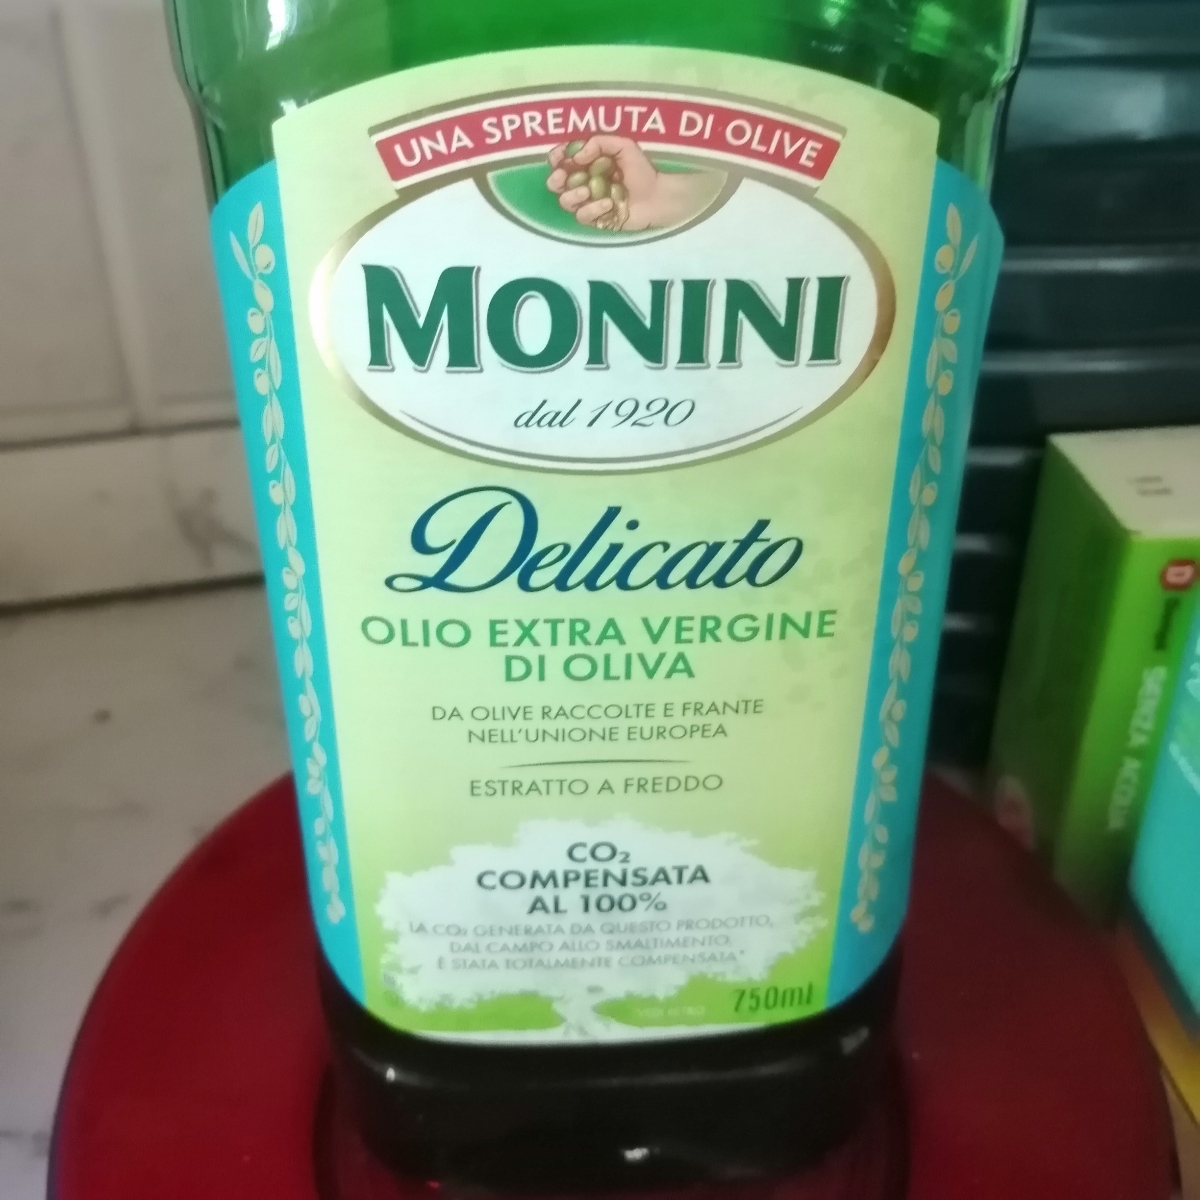 Monini Olio evo delicato Reviews | abillion